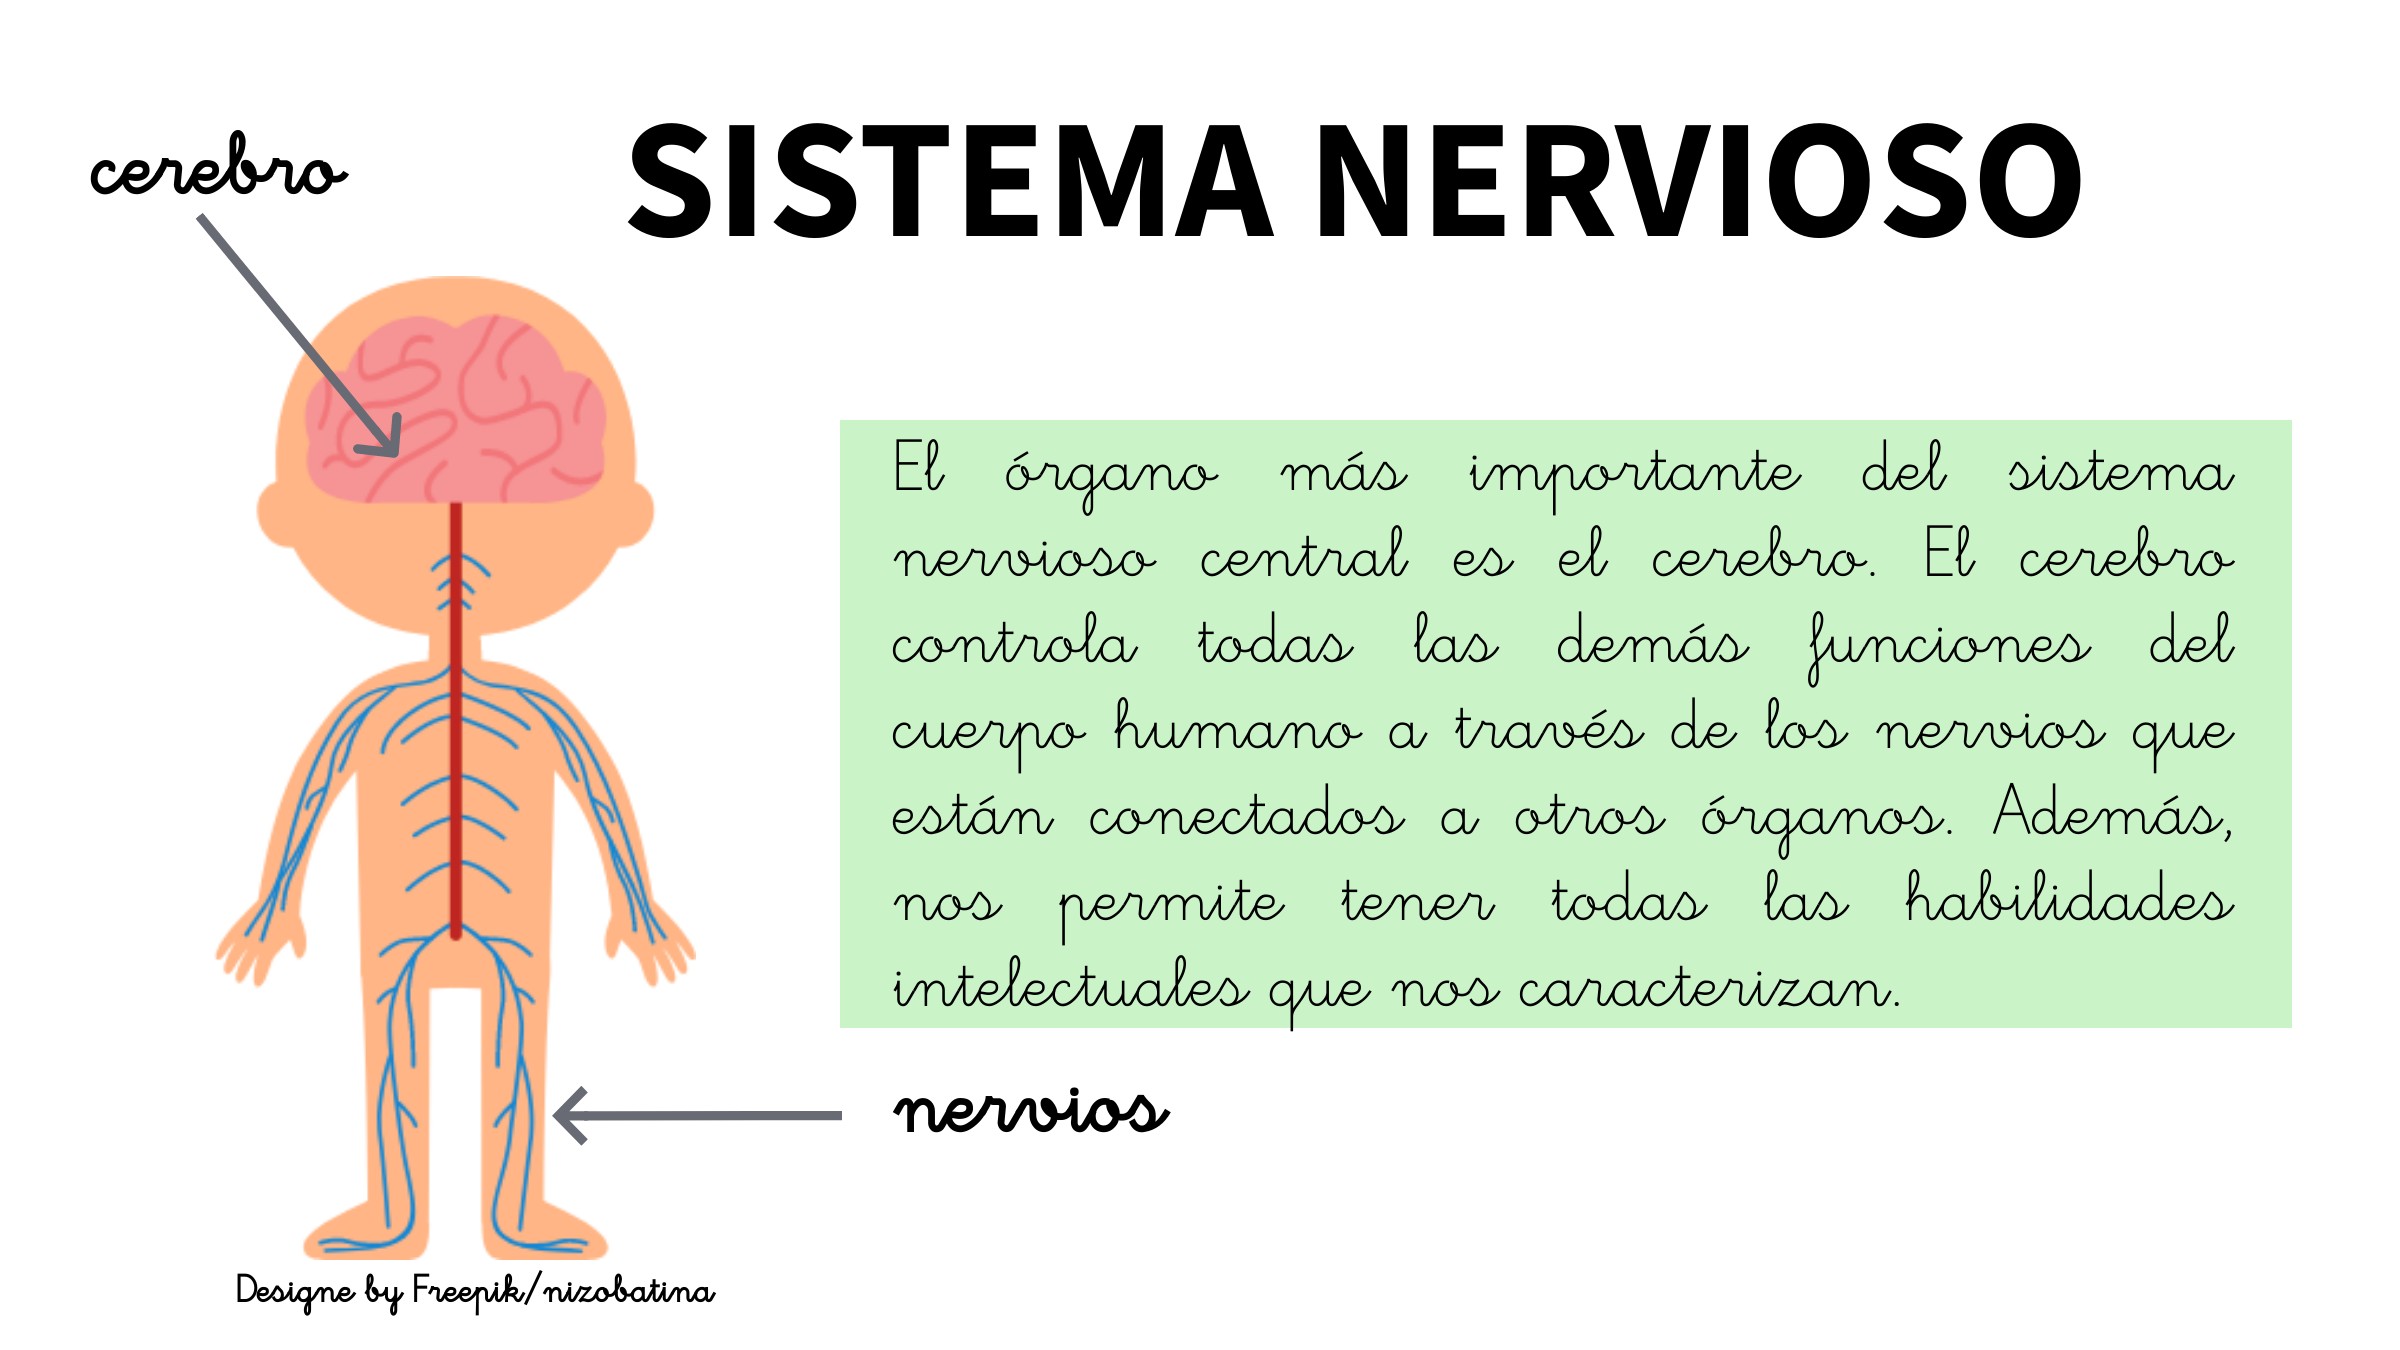 Explicación breve del sistema nervioso y su órgano principal